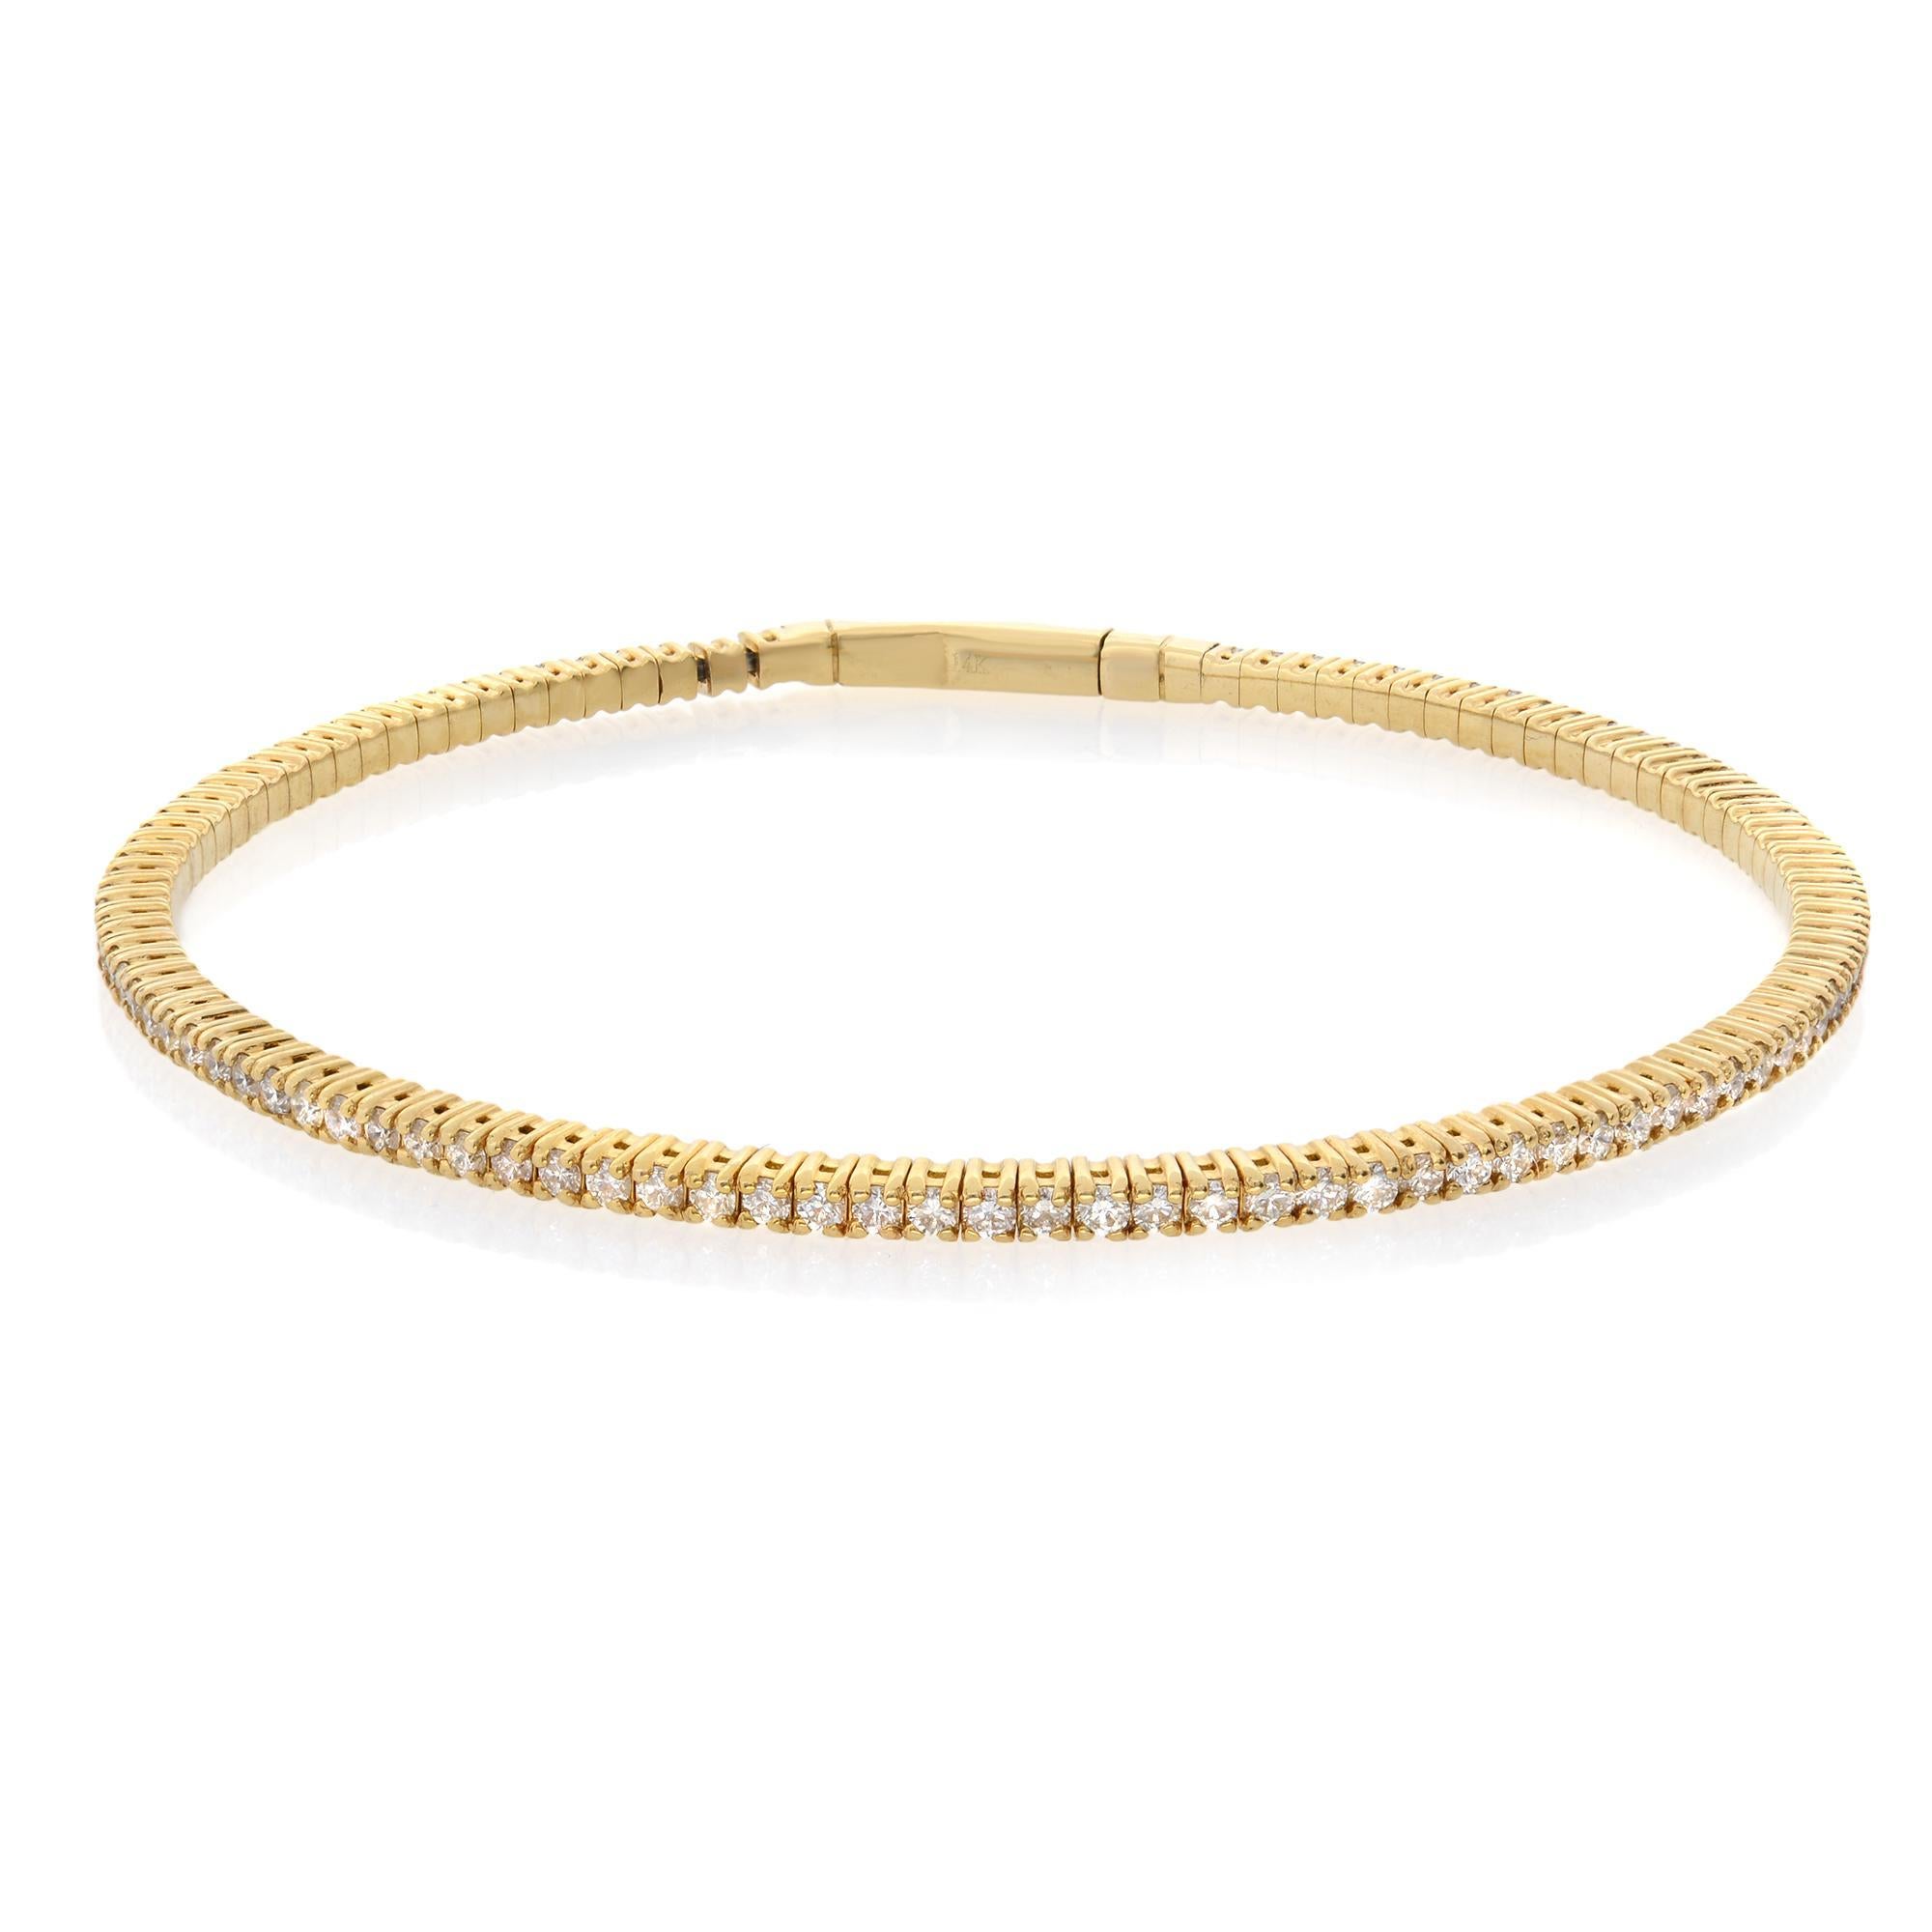 D'allure classique et d'une élégance facile, ce bracelet en diamants respire la sophistication. Un magnifique bracelet souple en or jaune 14 carats, serti de diamants blancs d'un poids total de 1,50 ct. Le bracelet mesure 1,8 mm de large et pèse